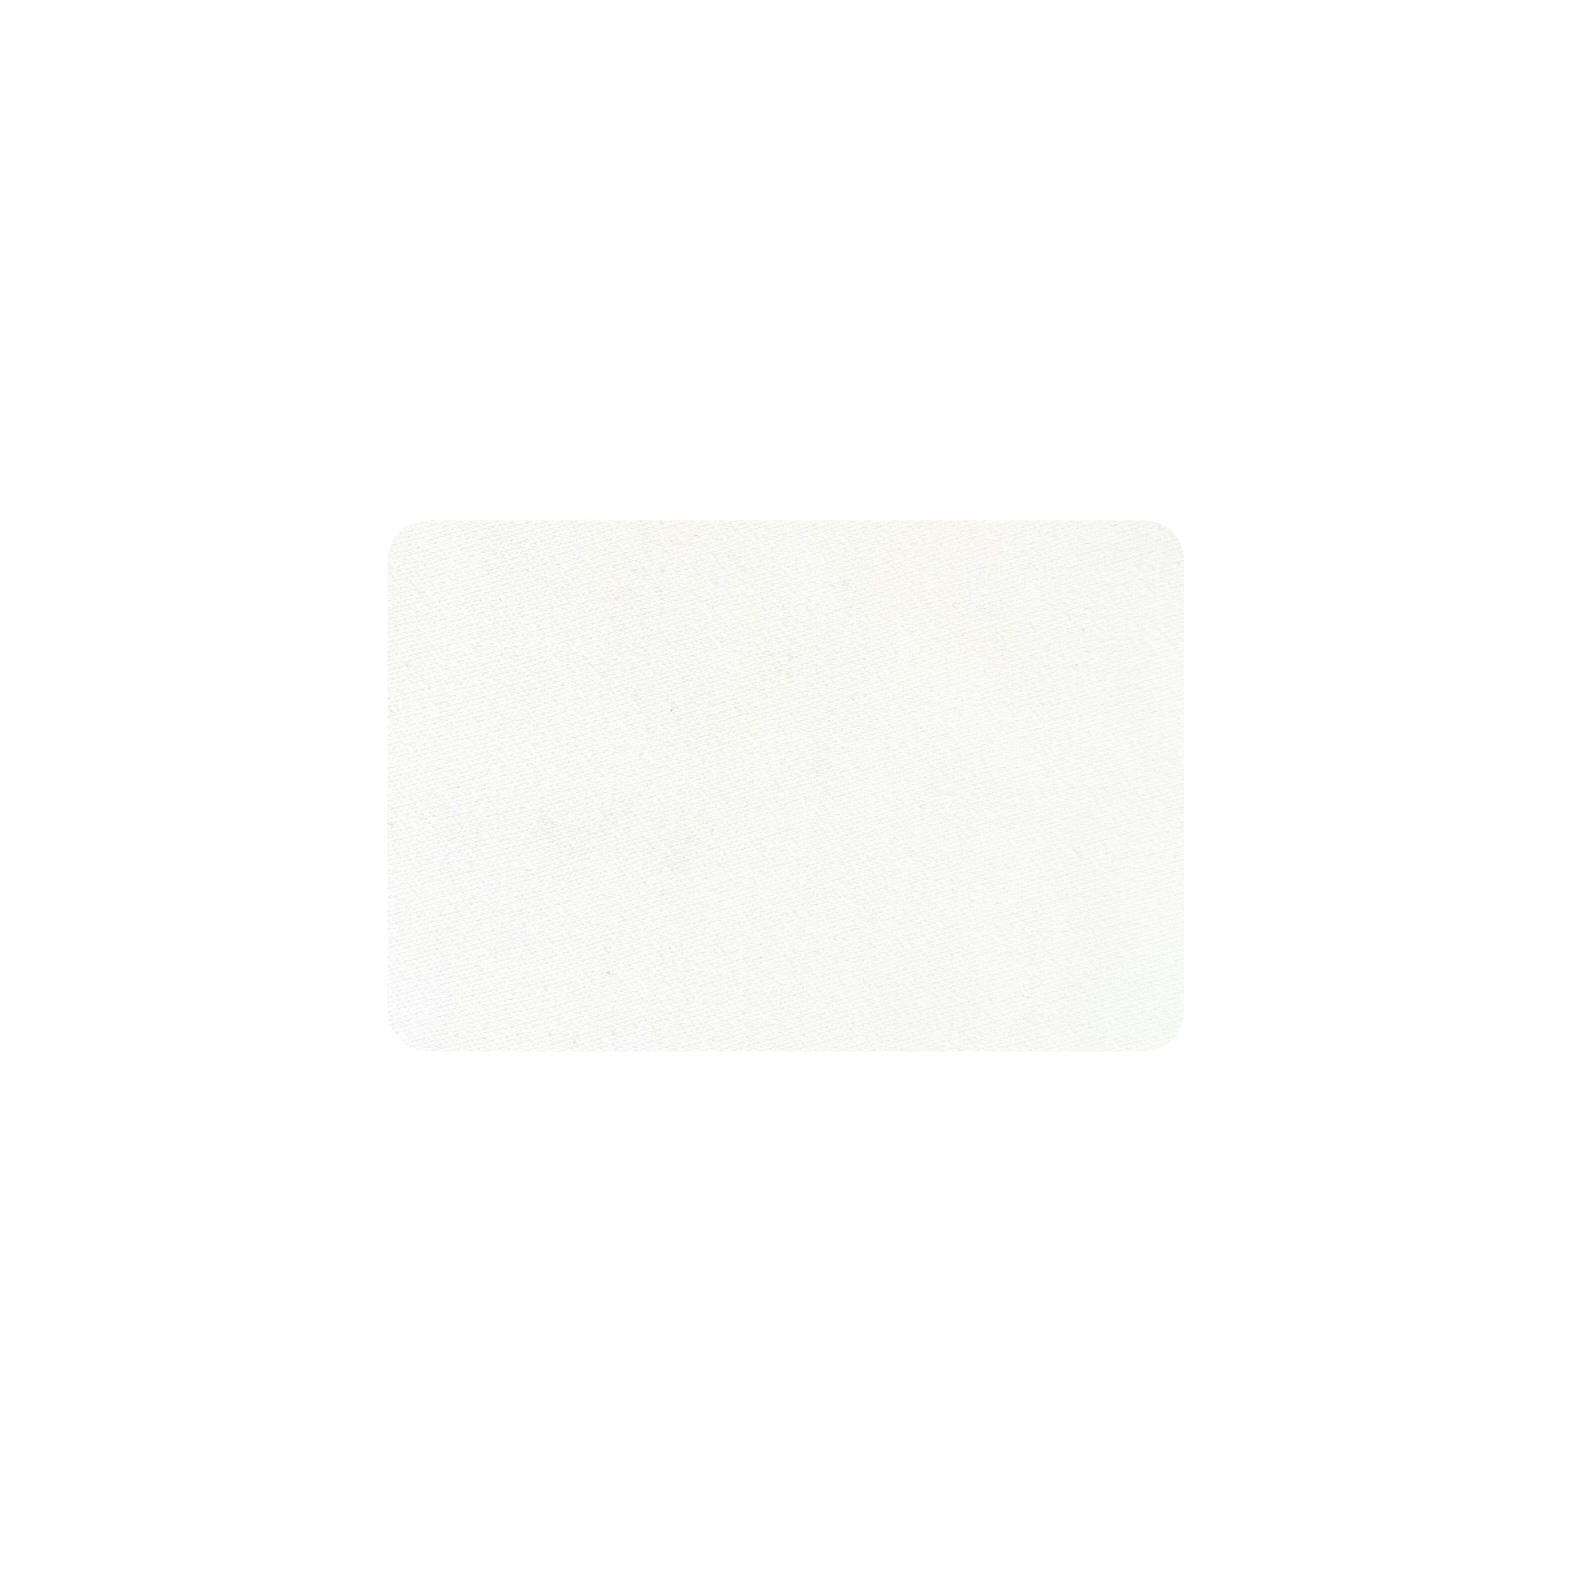 Mantel rectangular blanco (cantos redondos) 358x248 cm.